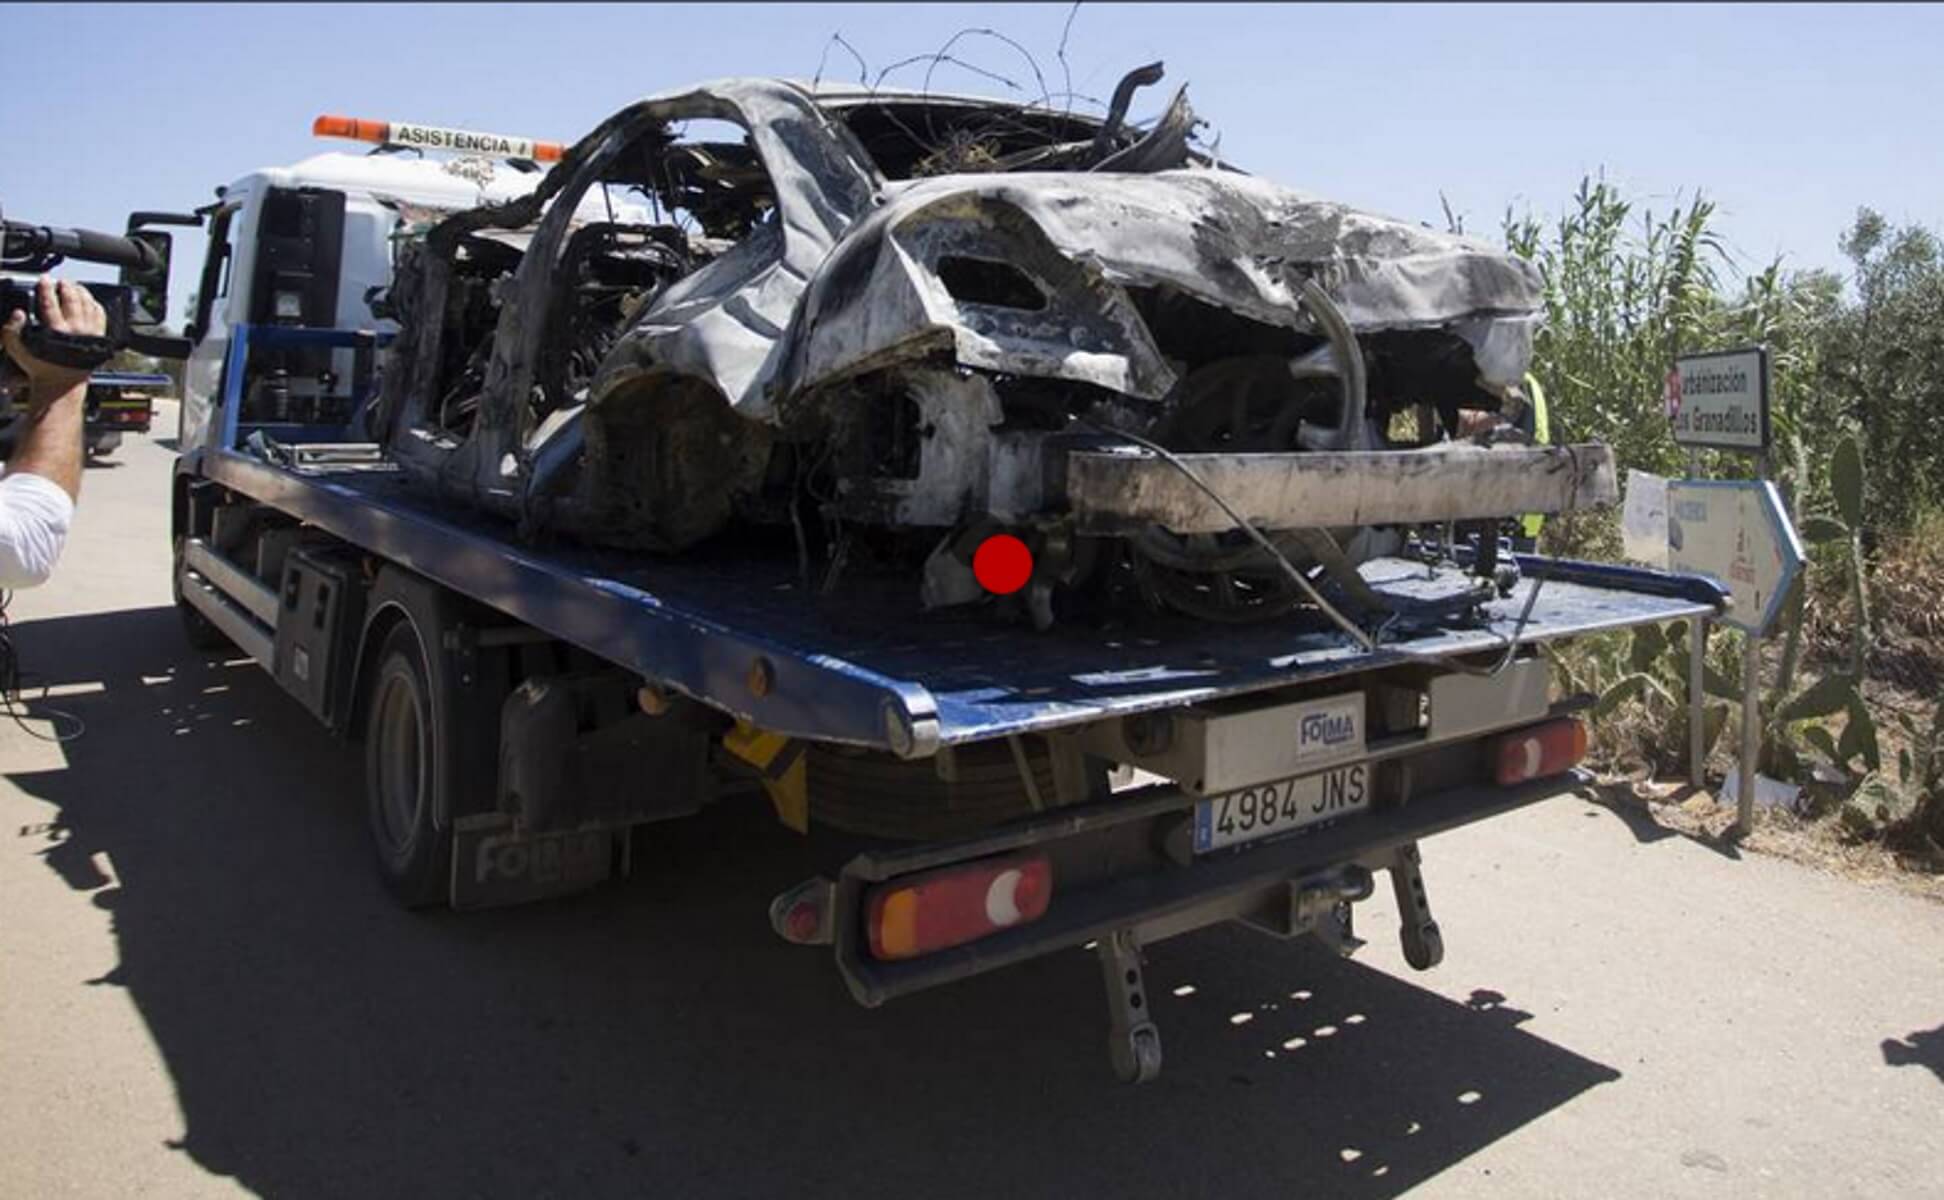 “Σμπαράλια” το αυτοκίνητο του Χοσέ Αντόνιο Ρέγιες! Οι πρώτες εικόνες από τον τόπο του δυστυχήματος